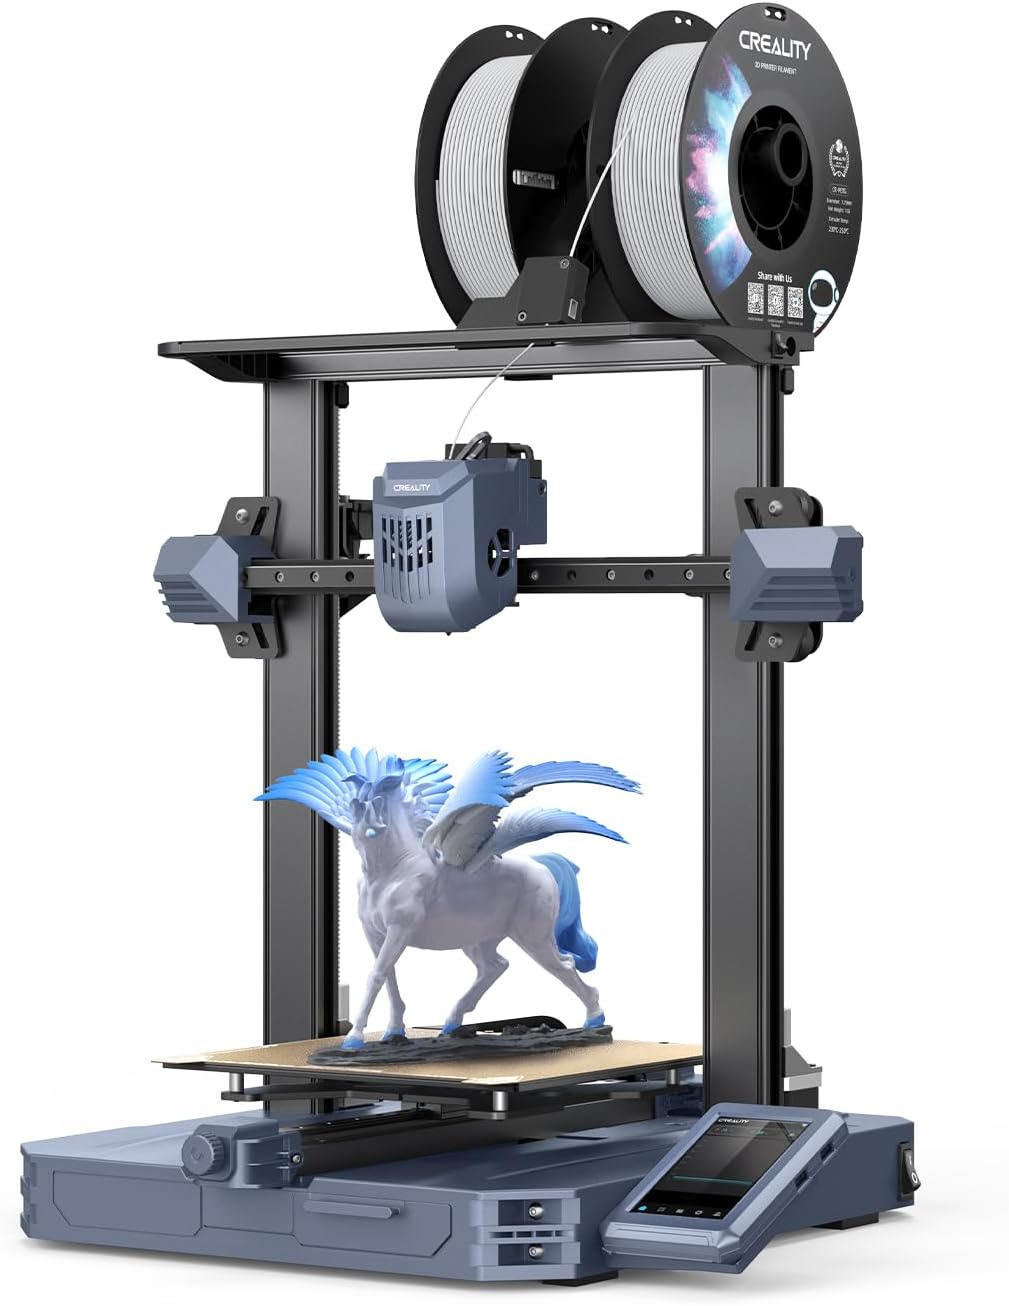 Impresora 3D Creality CR 10 SE